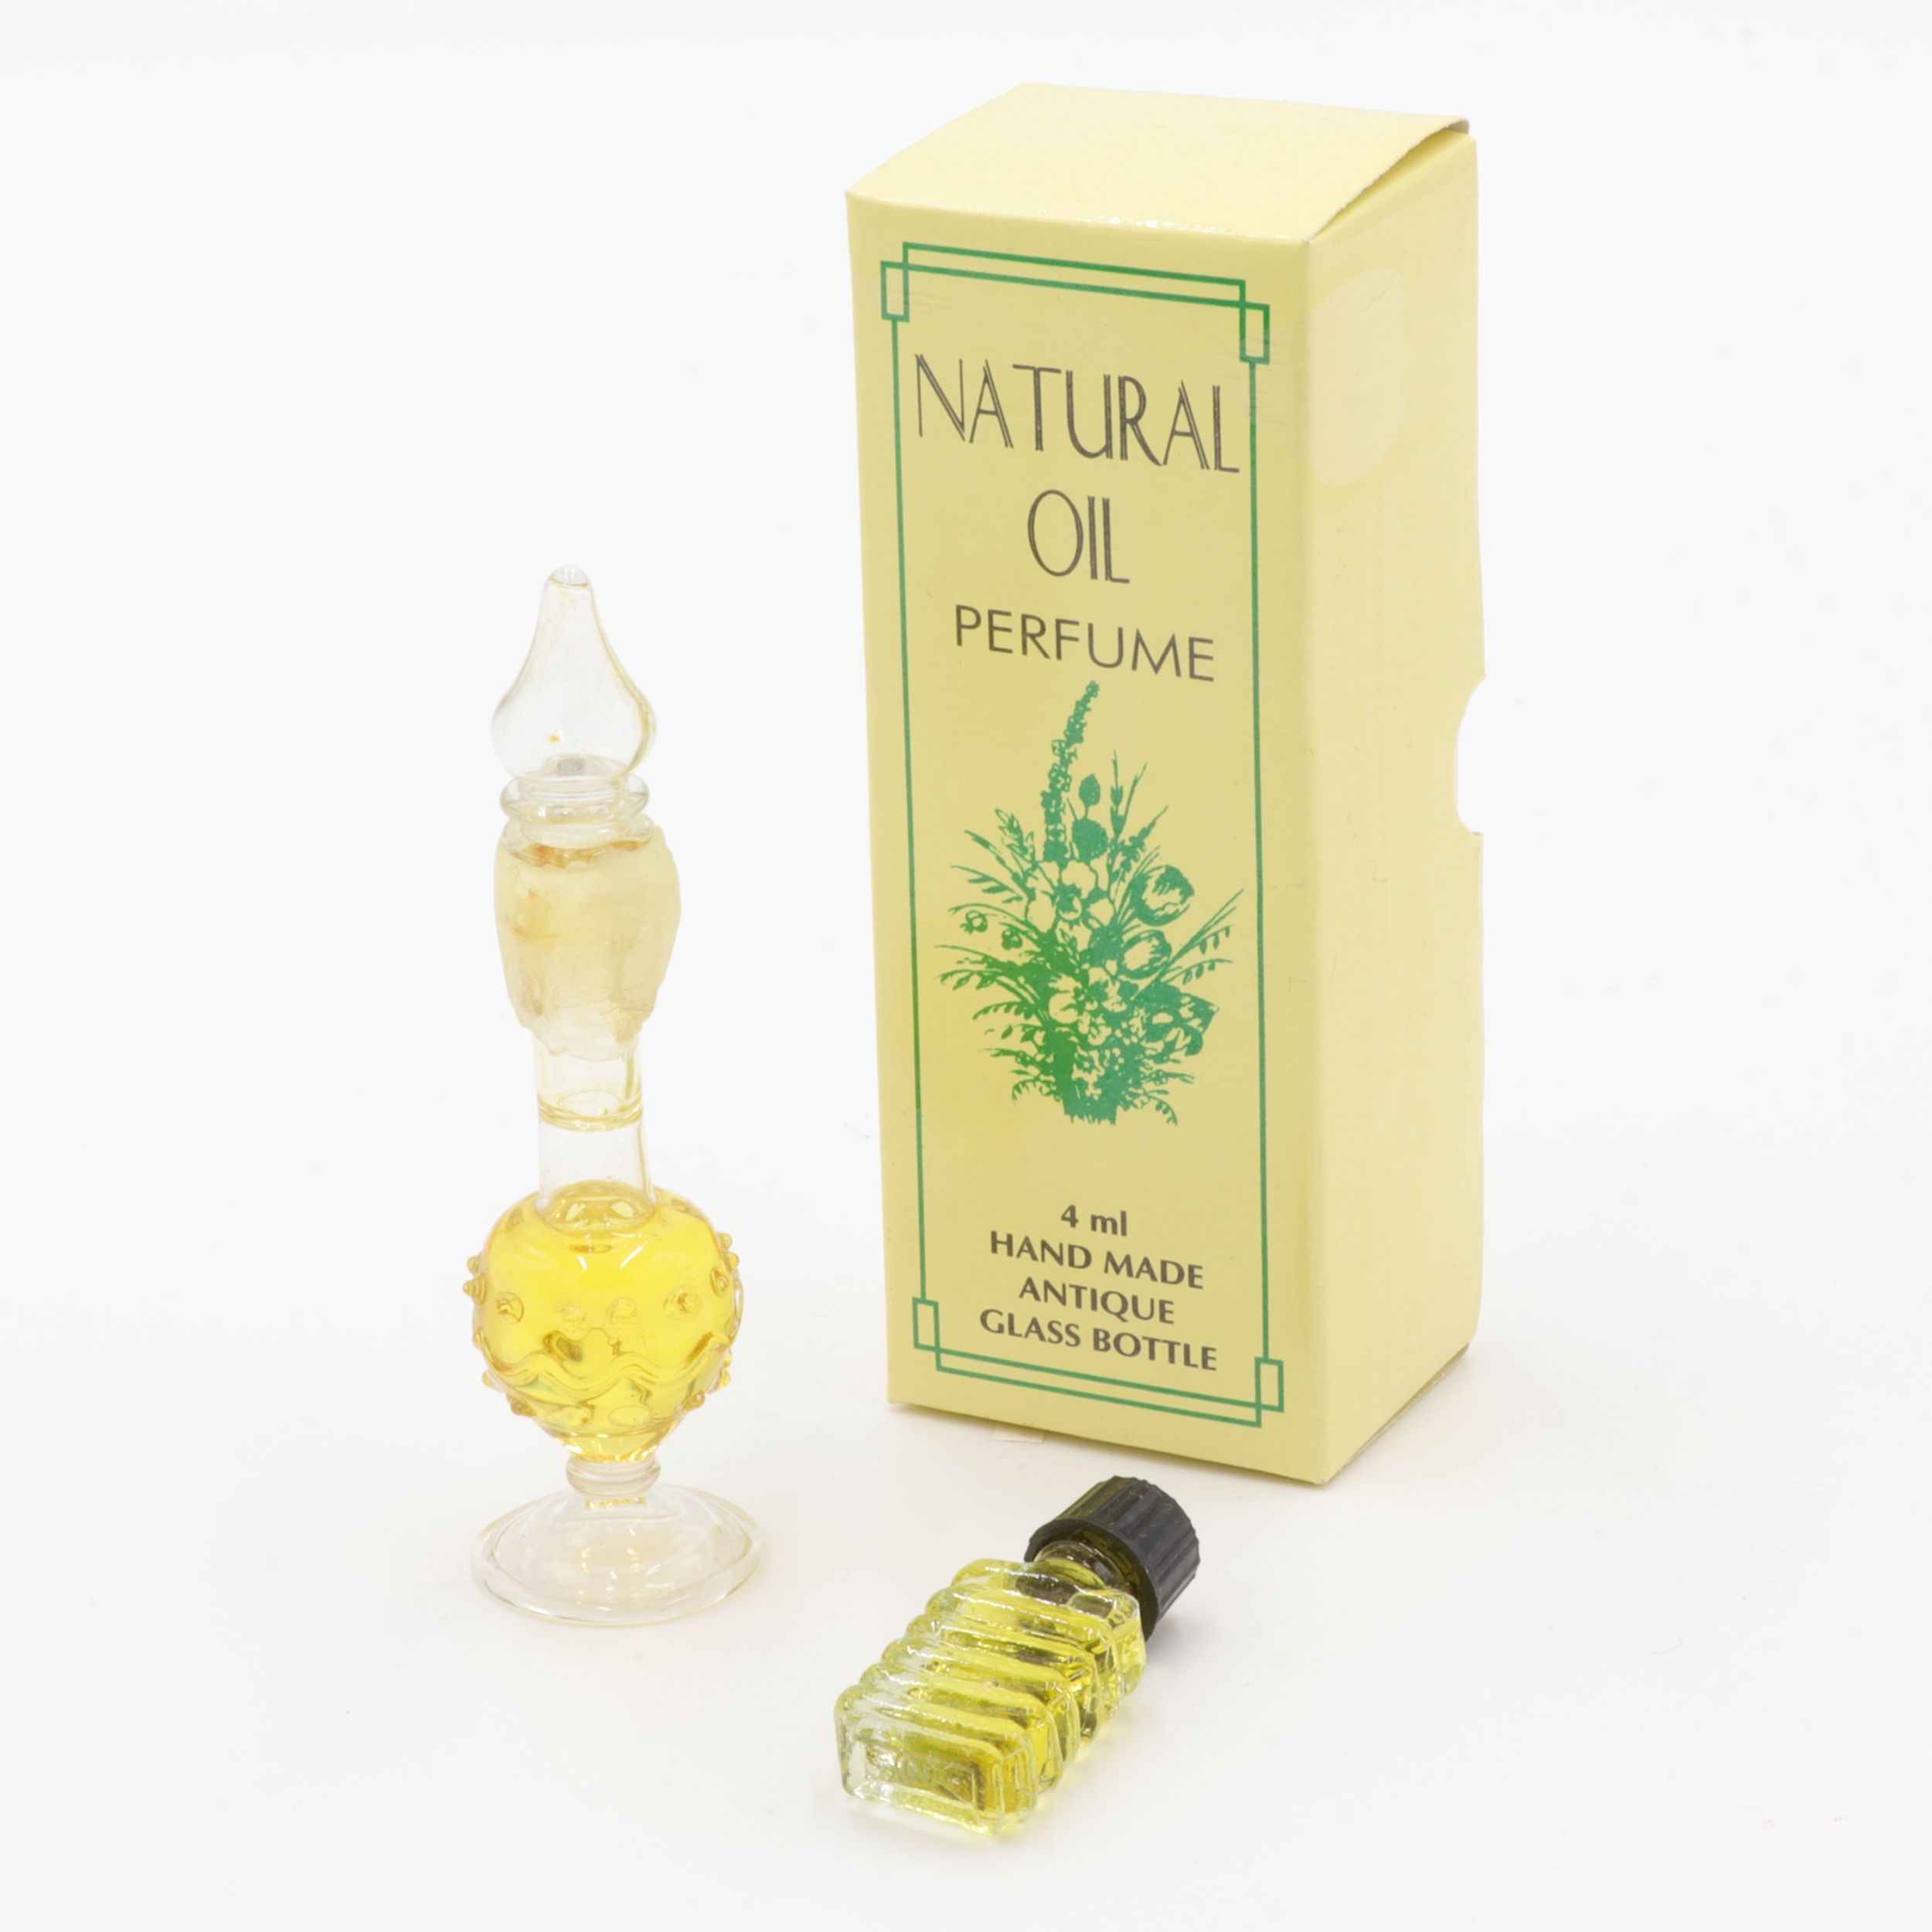 Natürliches Parfüm Öl - Antik-Flakon - Cedar Wood - feiner Duft wie eine Reise nach Indien - aus feinsten indischen Zuten - in handgemachtem Flakon